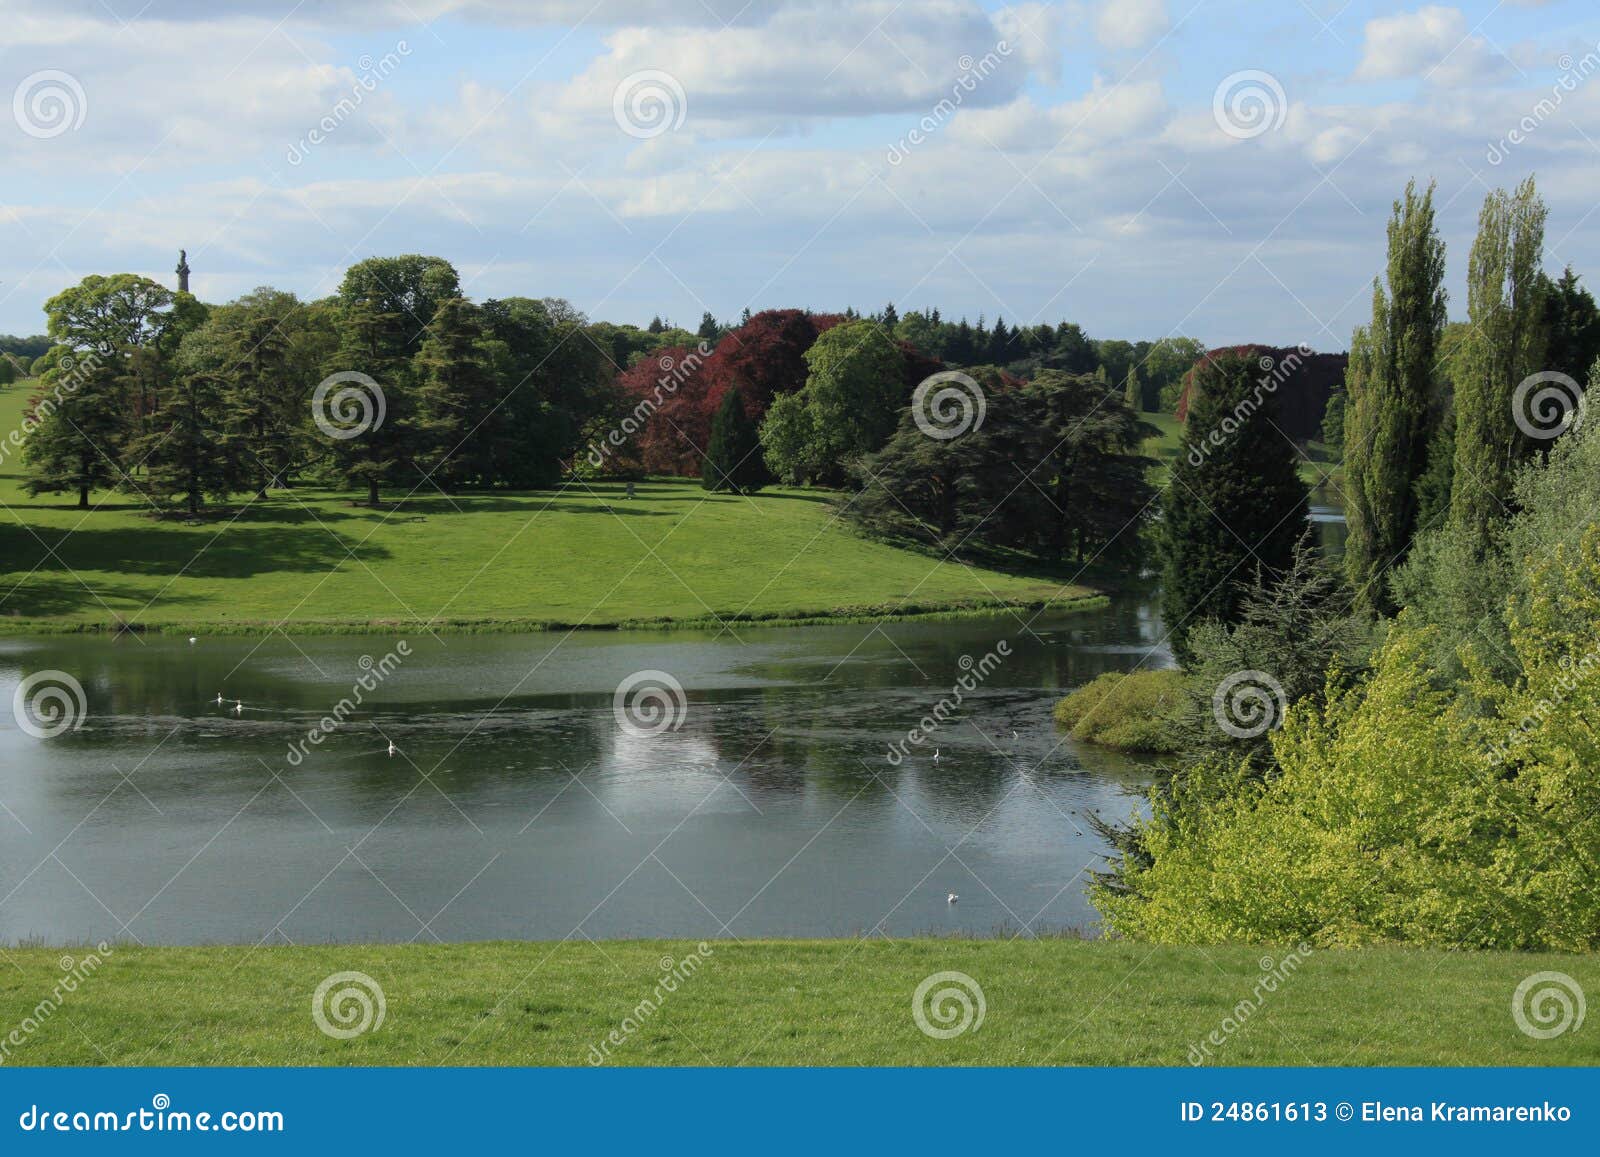 Lake Near Blenheim Palace Stock Image Image Of Field 24861613